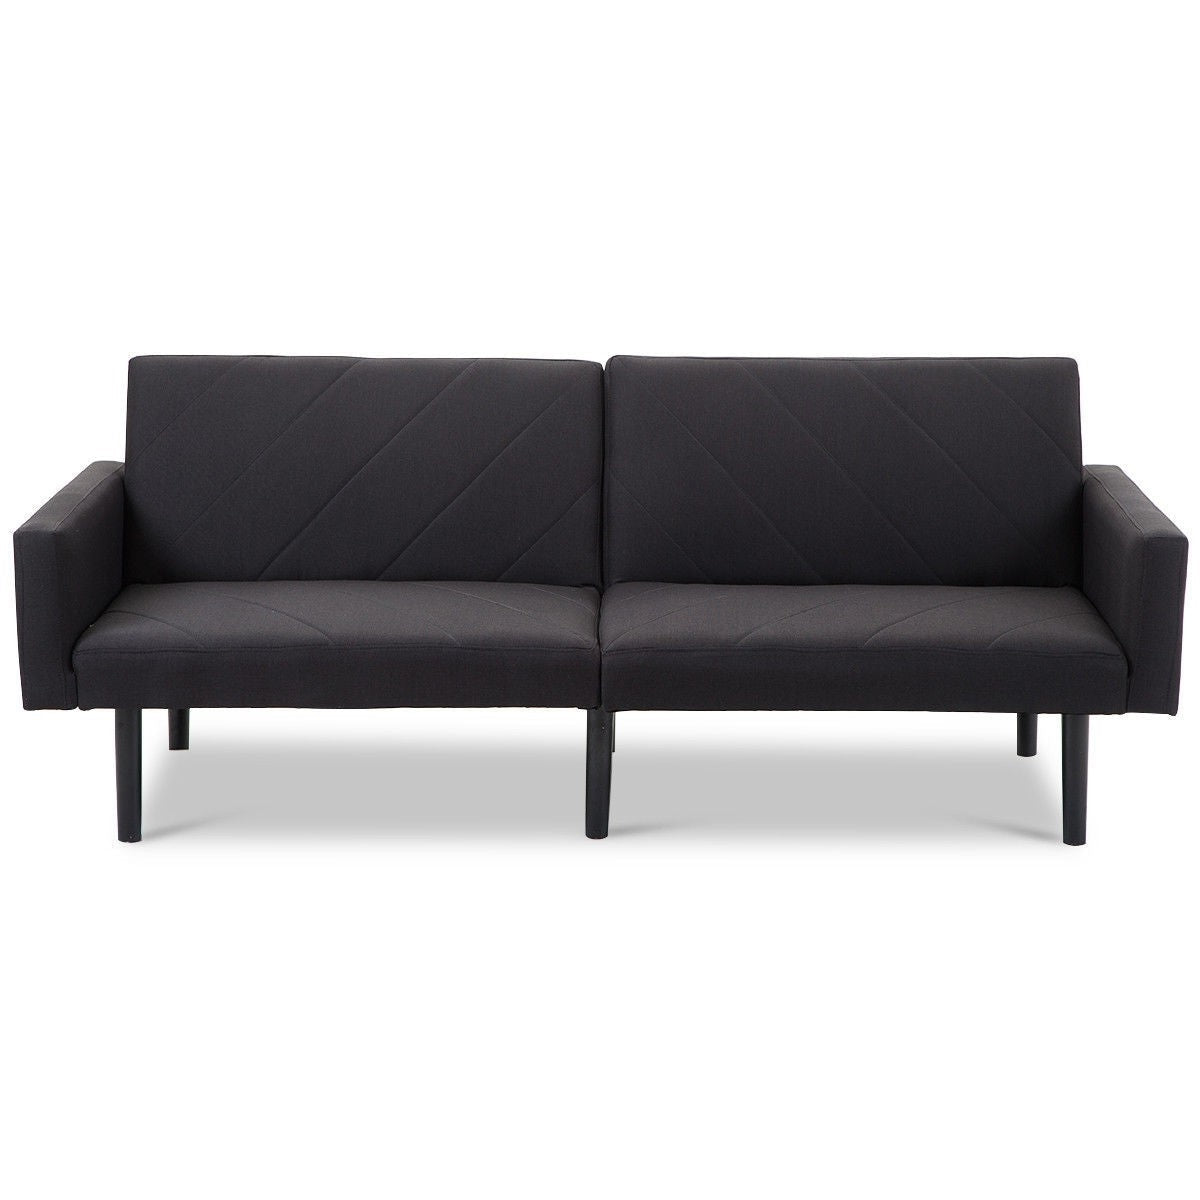 Living Room > Sofas - Modern Black Linen Split-Back Futon Sleeper Sofa Bed Couch